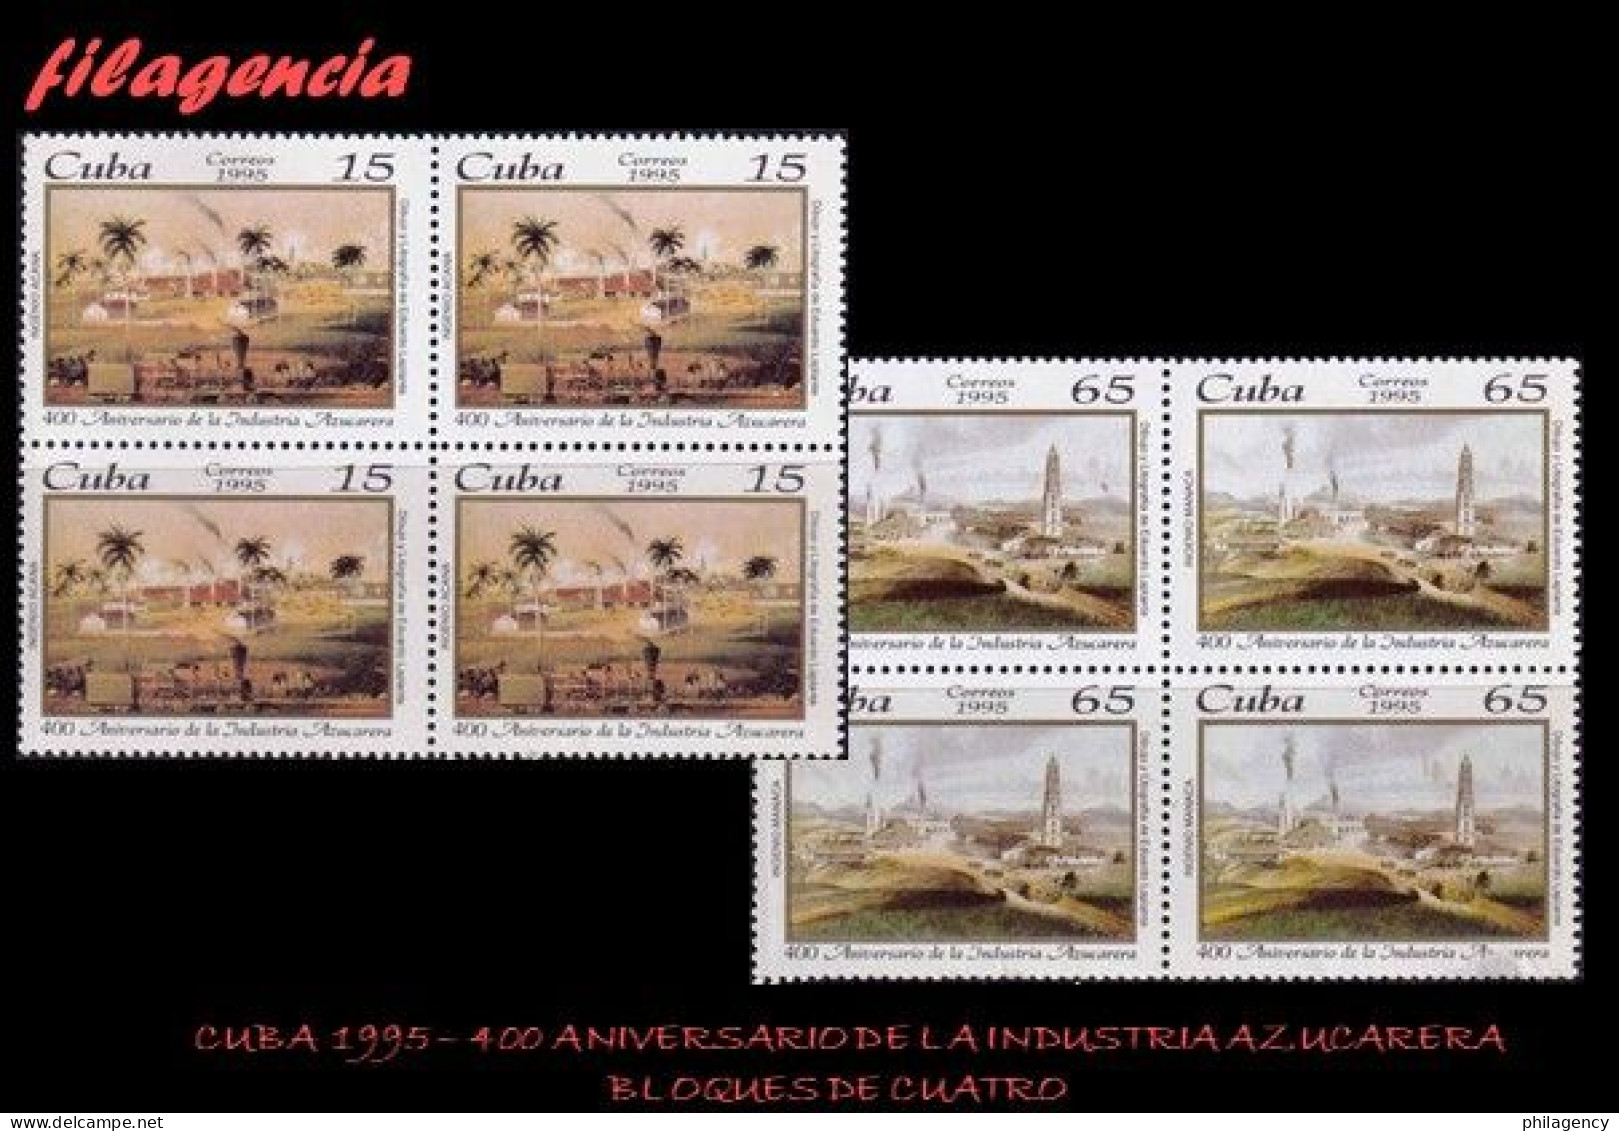 CUBA. BLOQUES DE CUATRO. 1995-15 IV CENTENARIO DE LA INDUSTRIA AZUCARERA EN CUBA - Nuovi